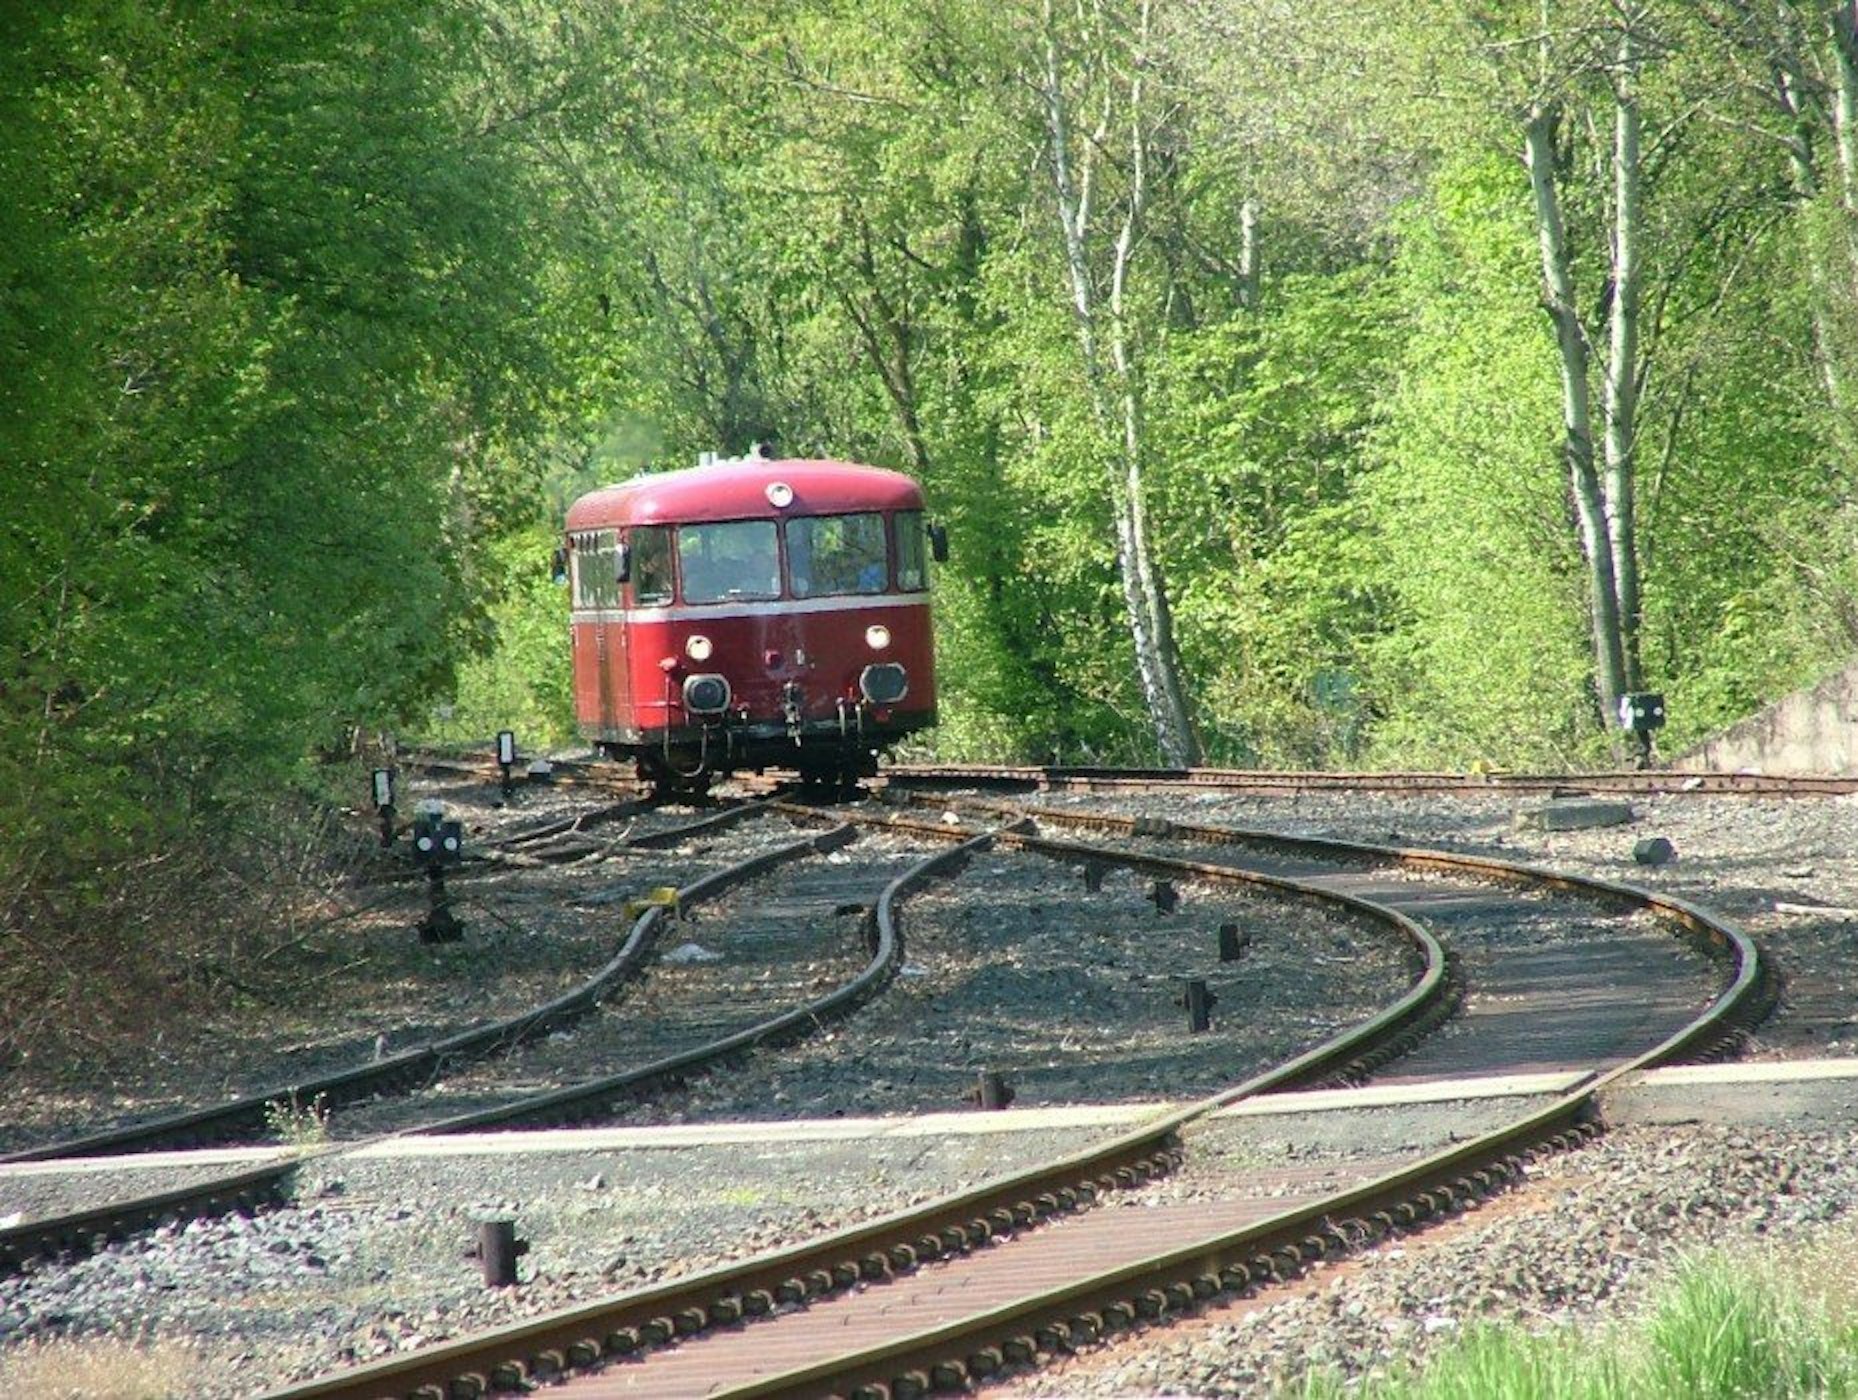 Ferkeltaxi wird der rote Schienenbus auch genannt, der von Linz nach Kalenborn fährt.